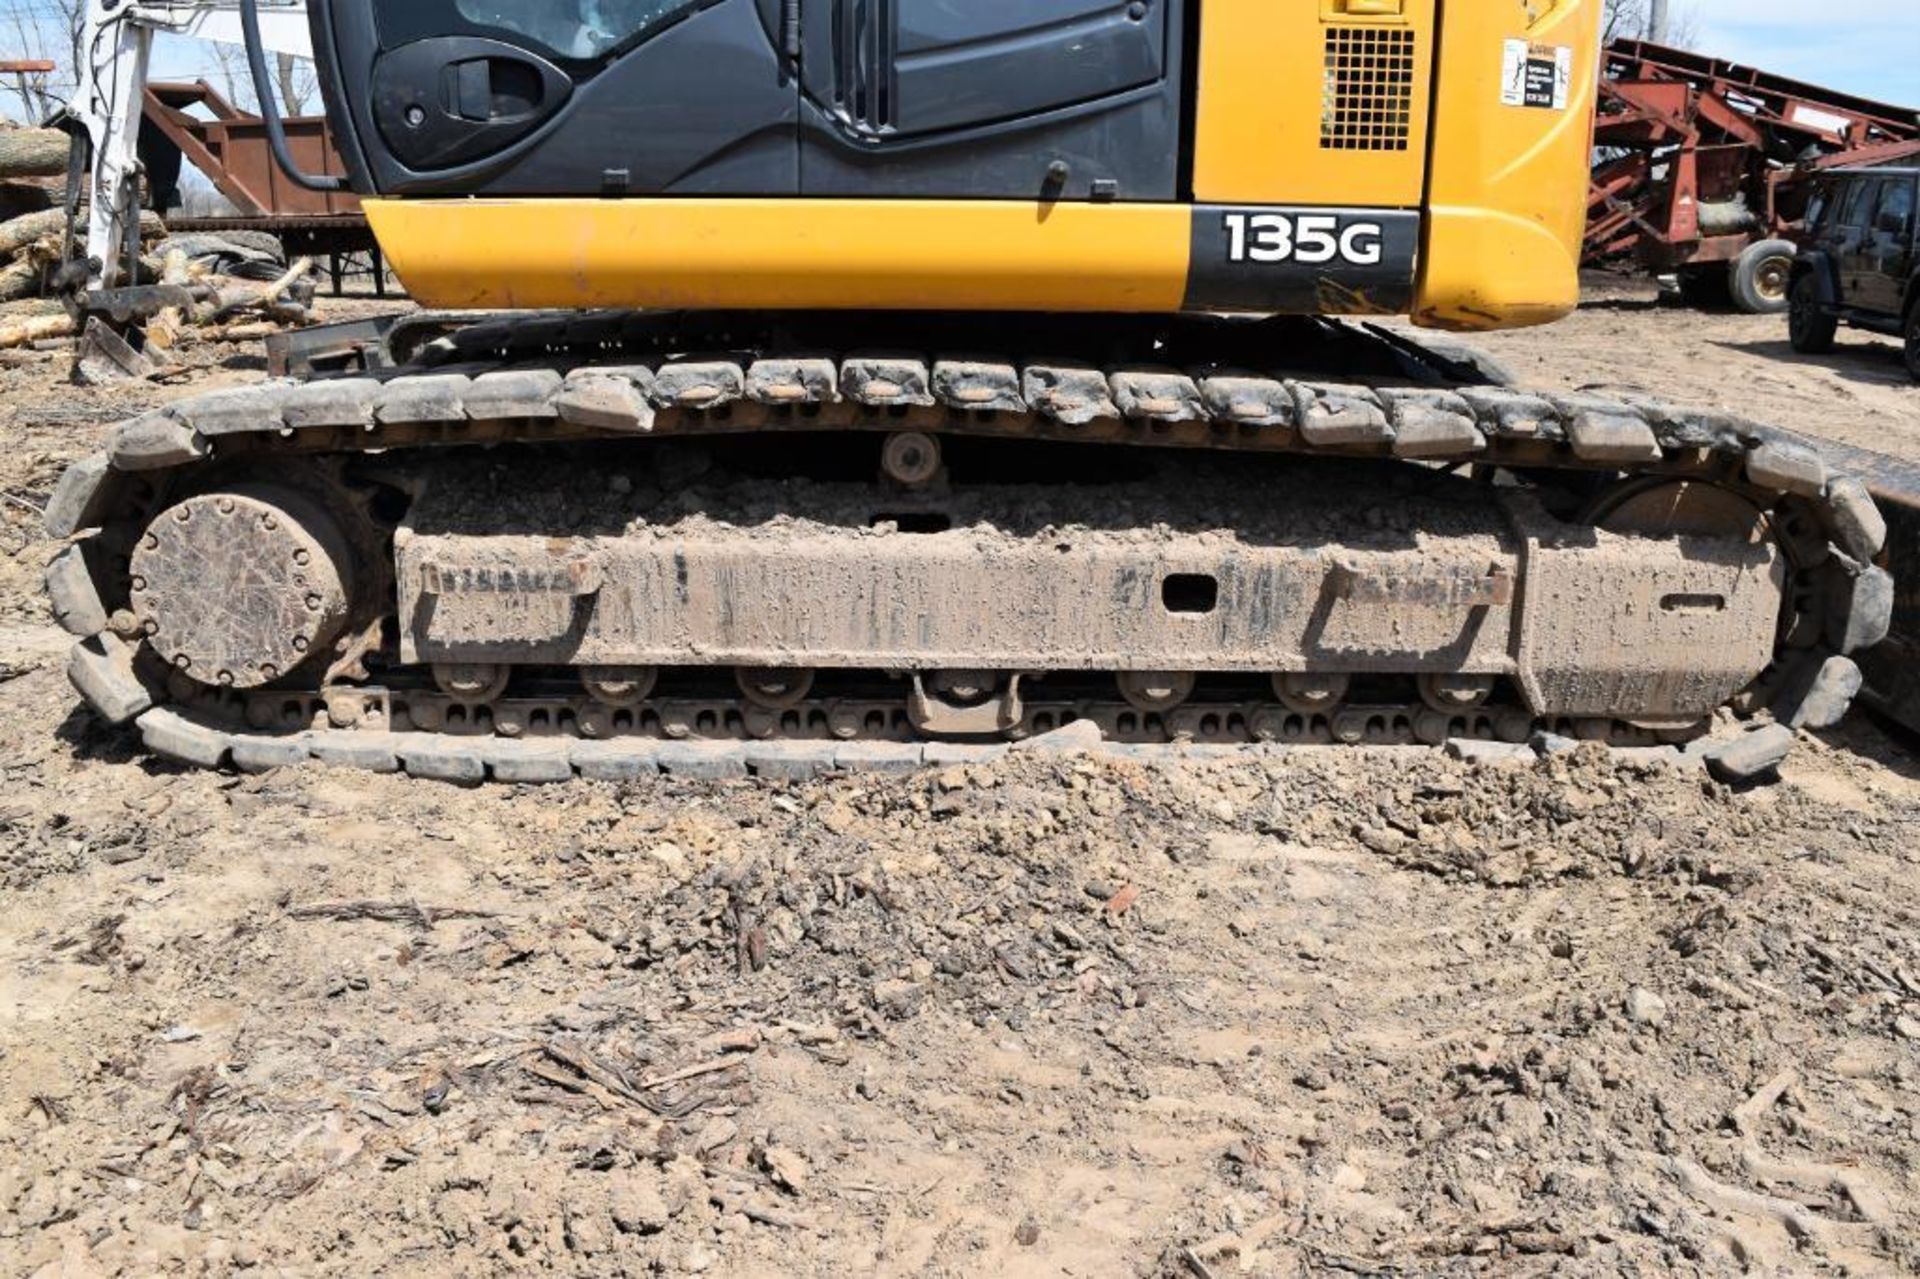 John Deere Model 135G Hydraulic Excavator S/N: 1FF135GXAEE400830 (2015) 1-24" Q/C Digging Bucket, 1- - Image 11 of 62